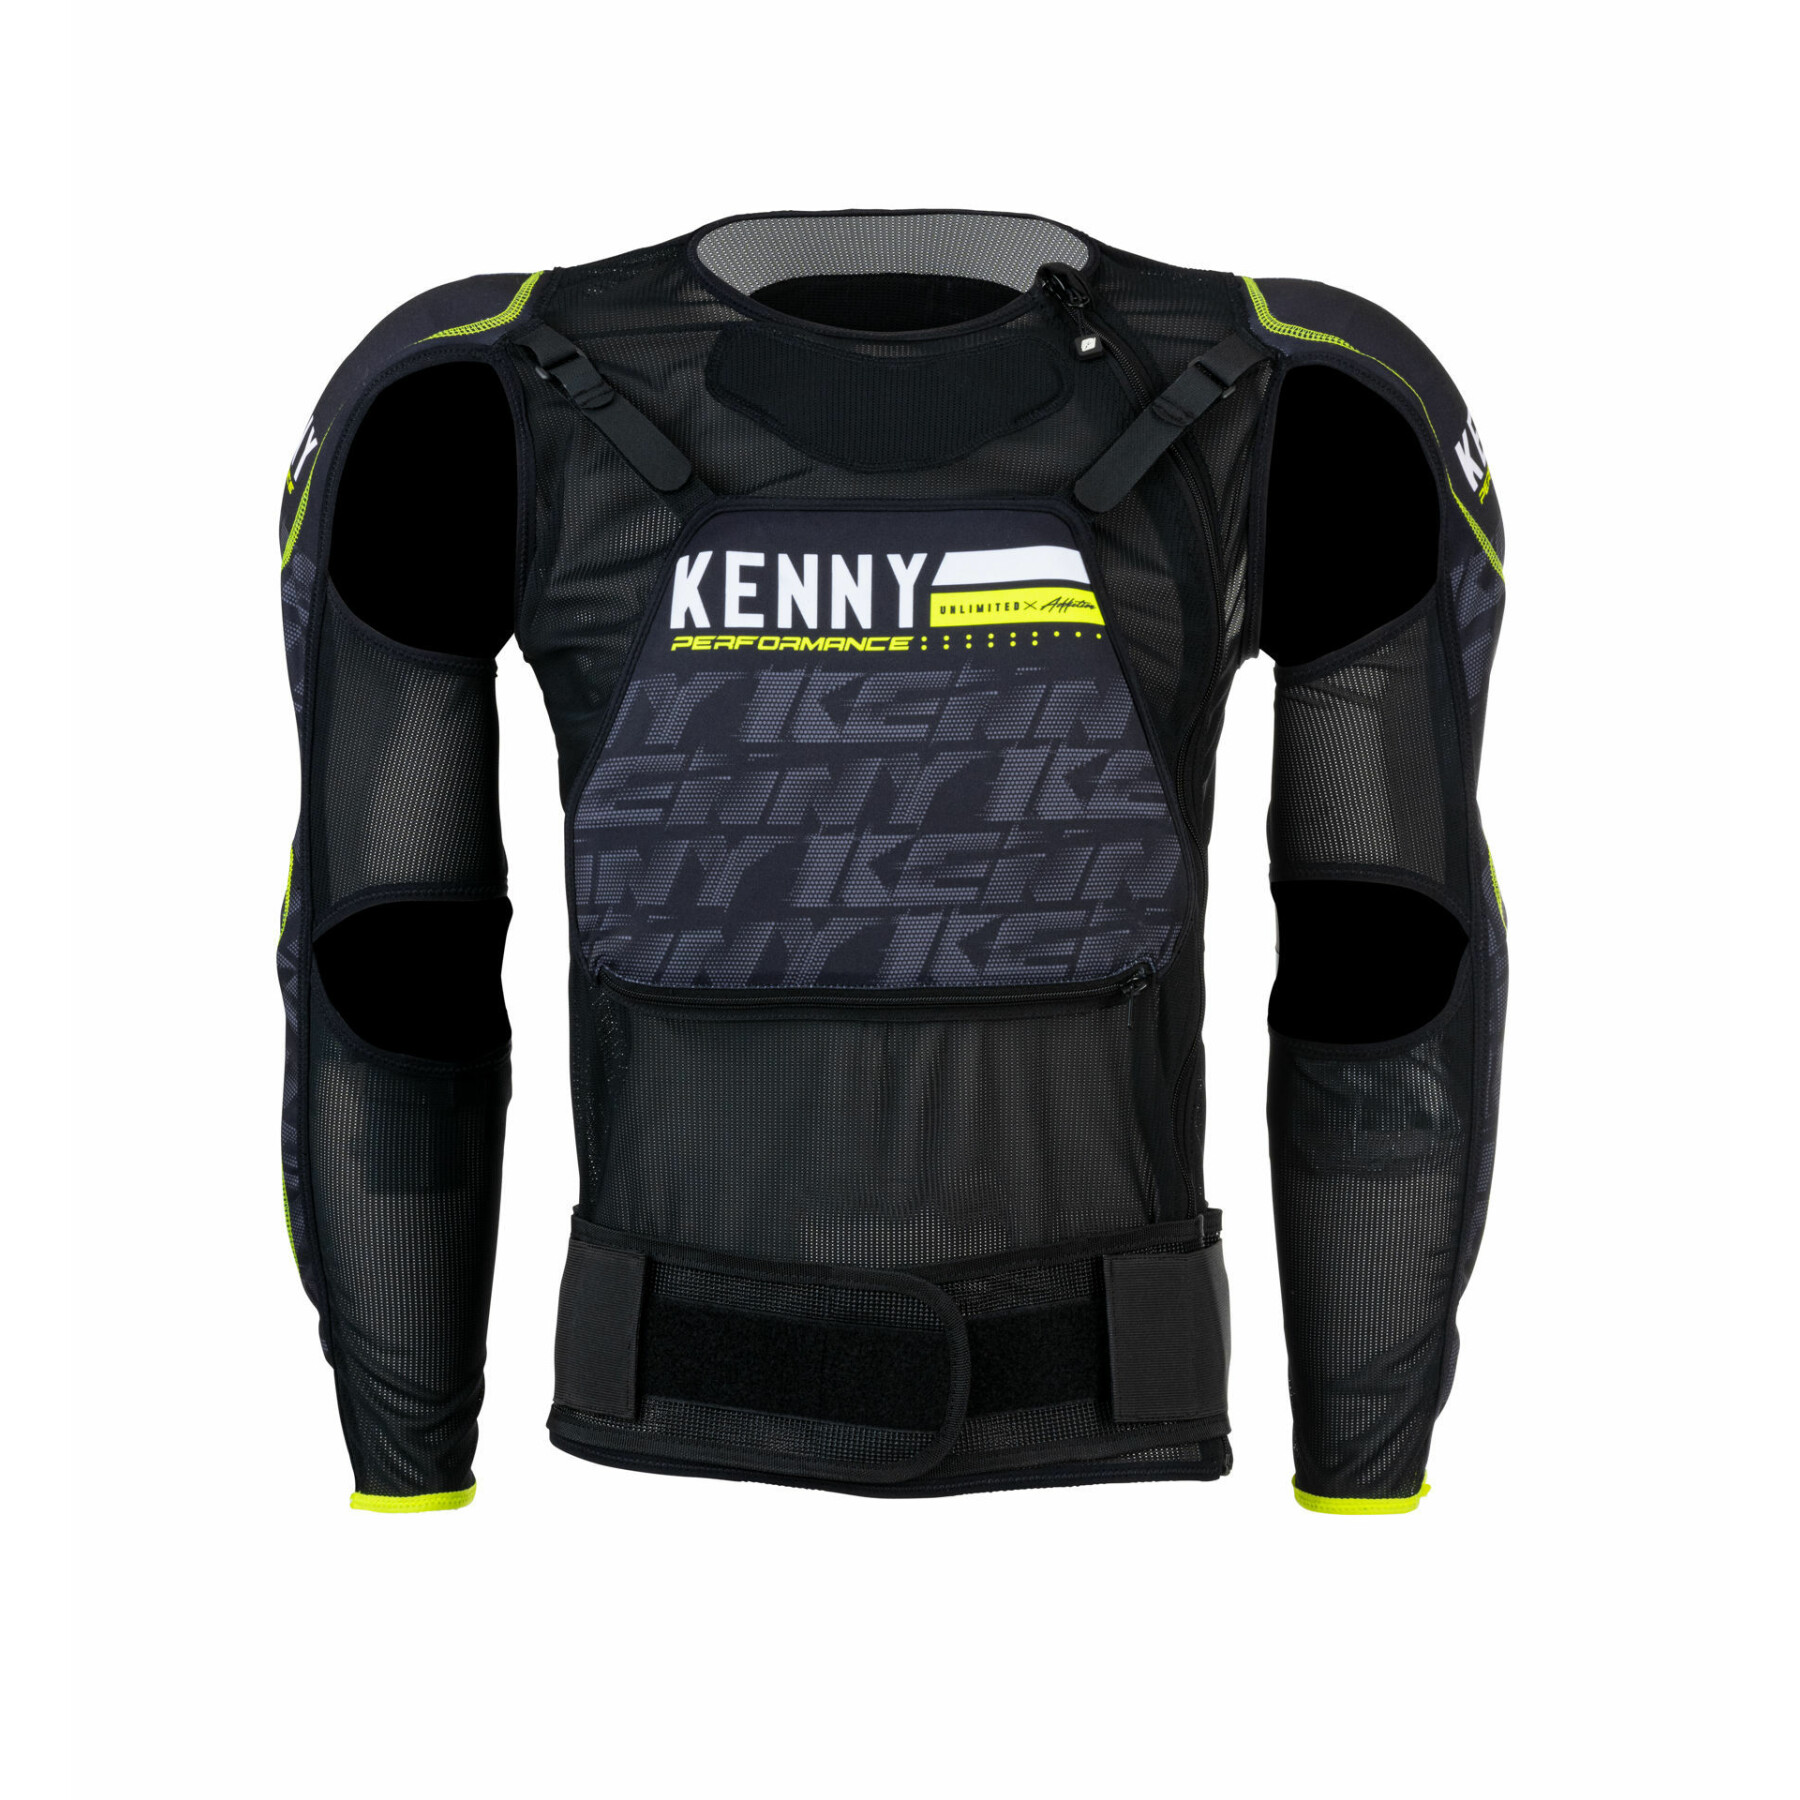 Child safety vest Kenny ultimate